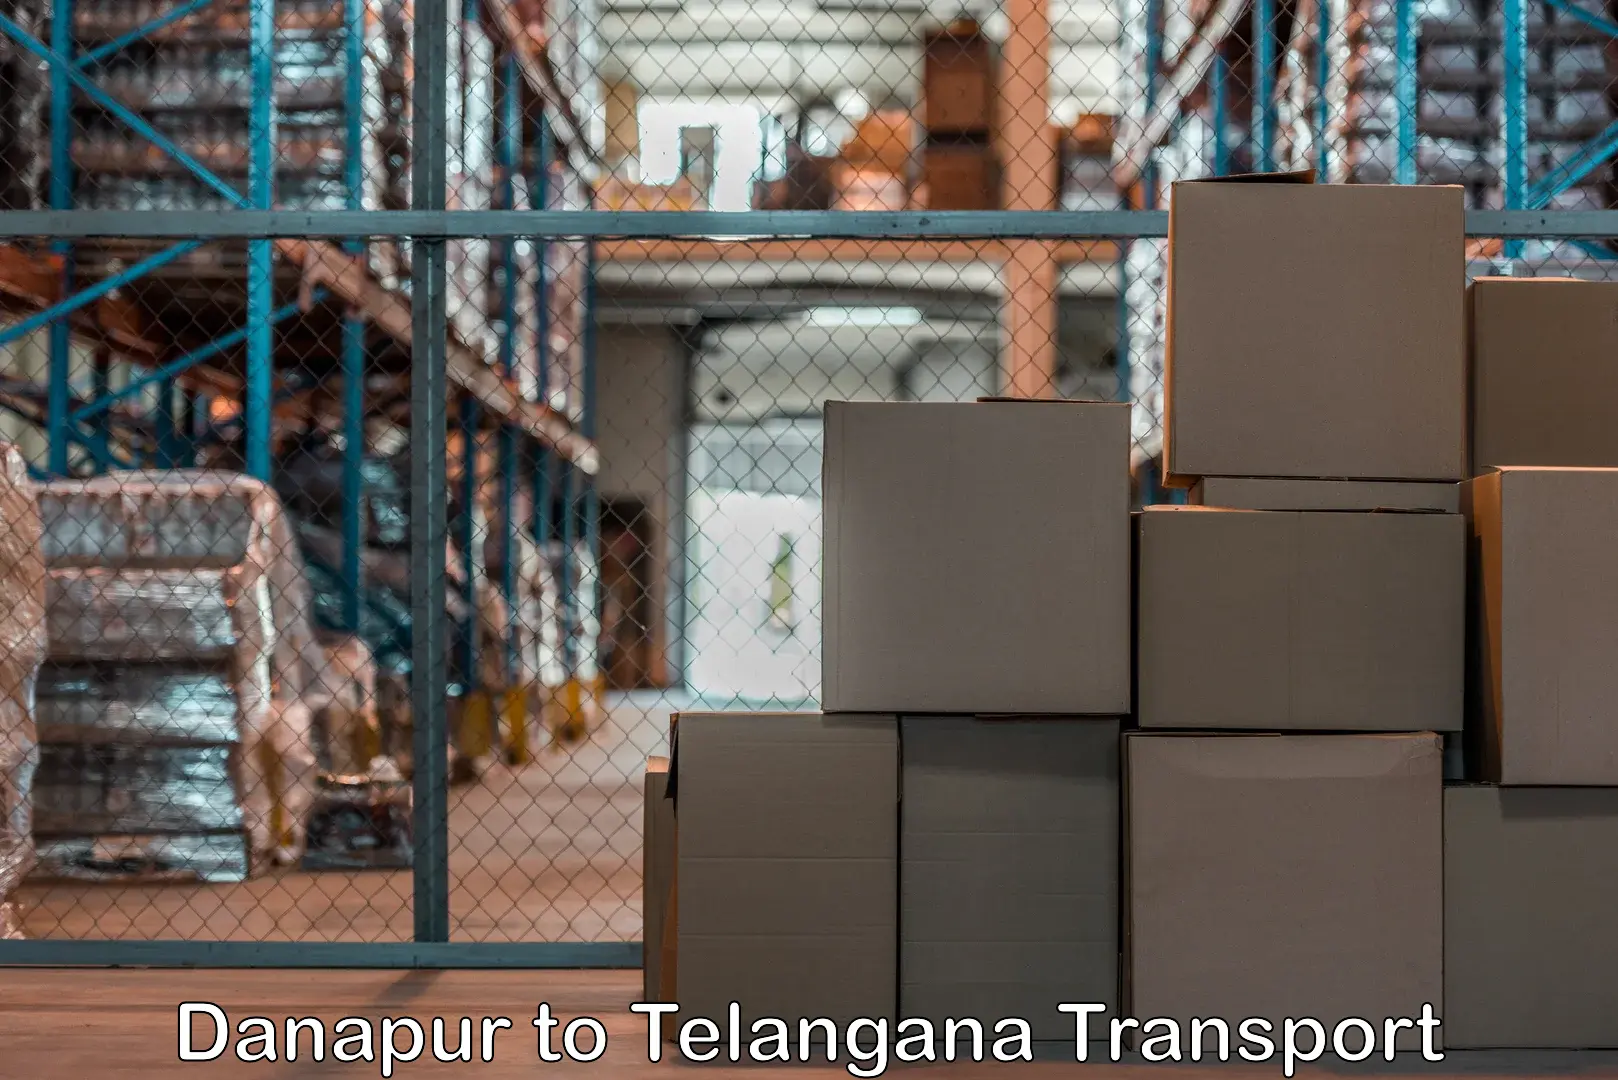 Delivery service Danapur to Bejjanki